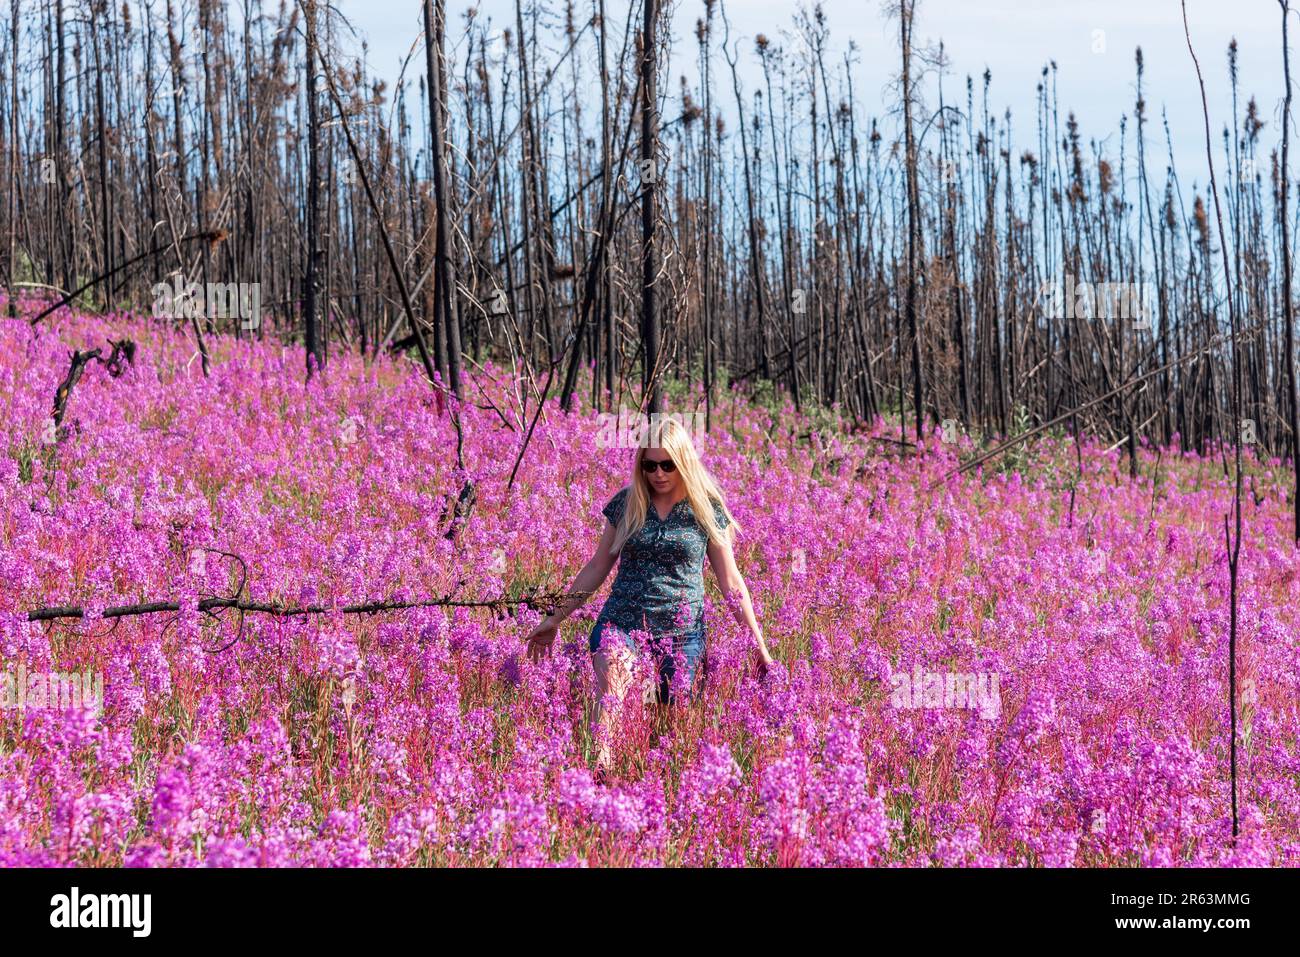 Eine Frau, die im Sommer in einer rosafarbenen, violetten Blumenlandschaft in der Wildnis mit Millionen von Feuerskräutern und landschaftlich reizvollen Landschaften zu sehen ist Stockfoto